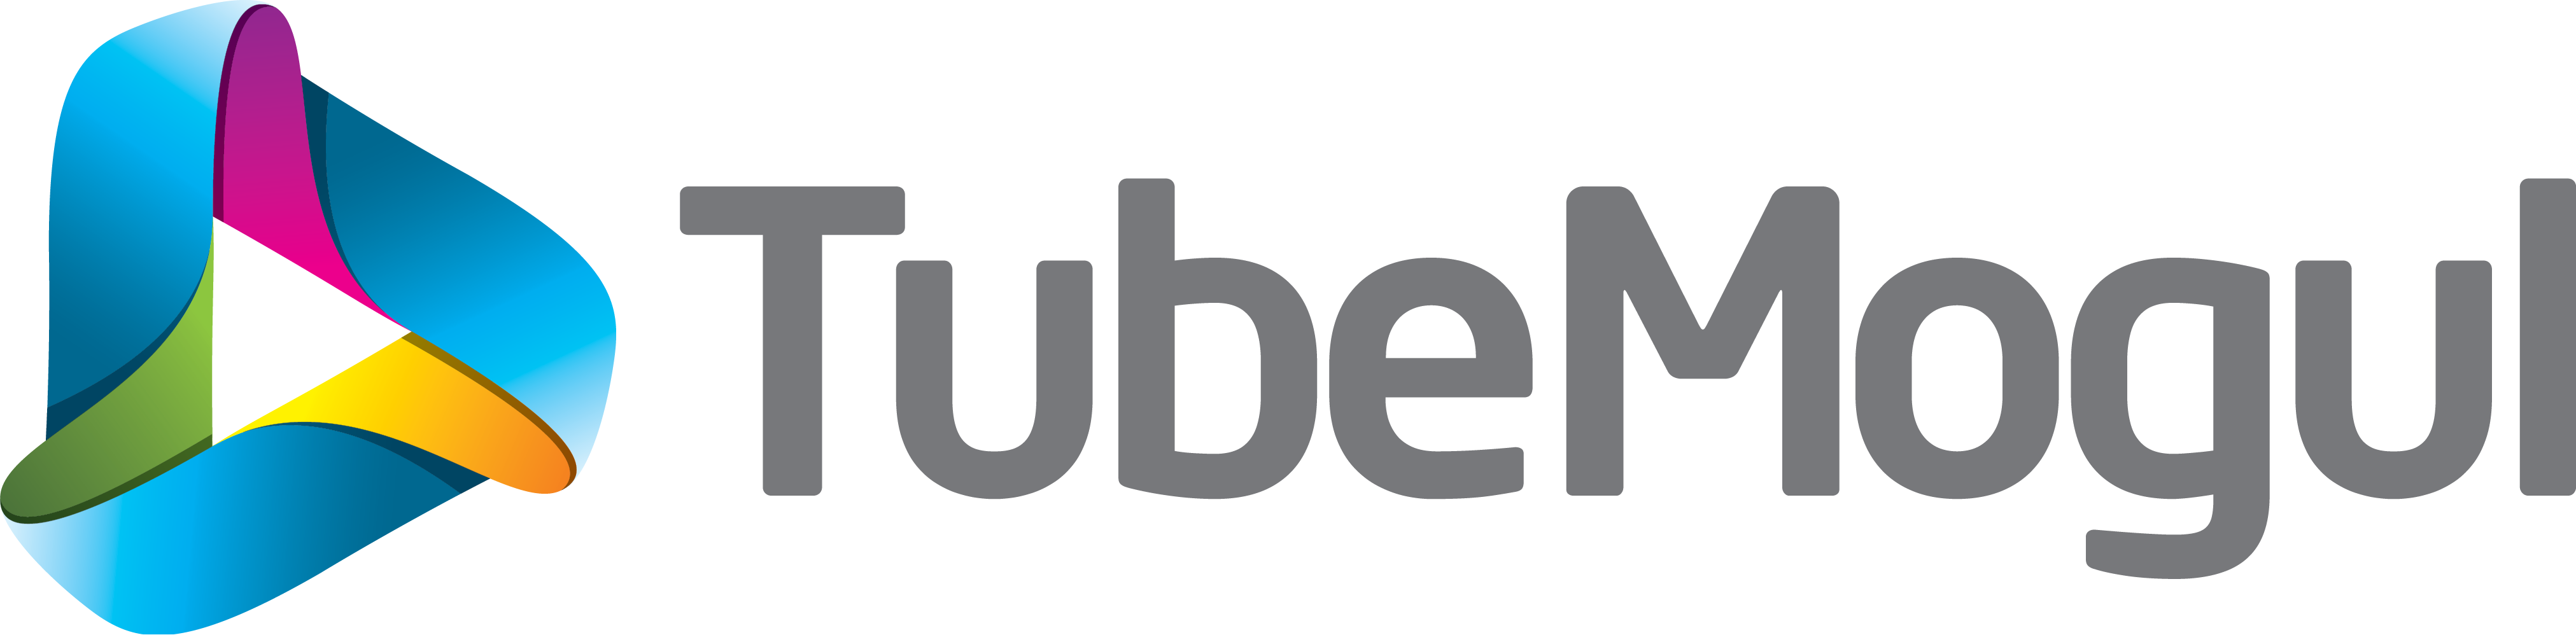 tubemogul-logo